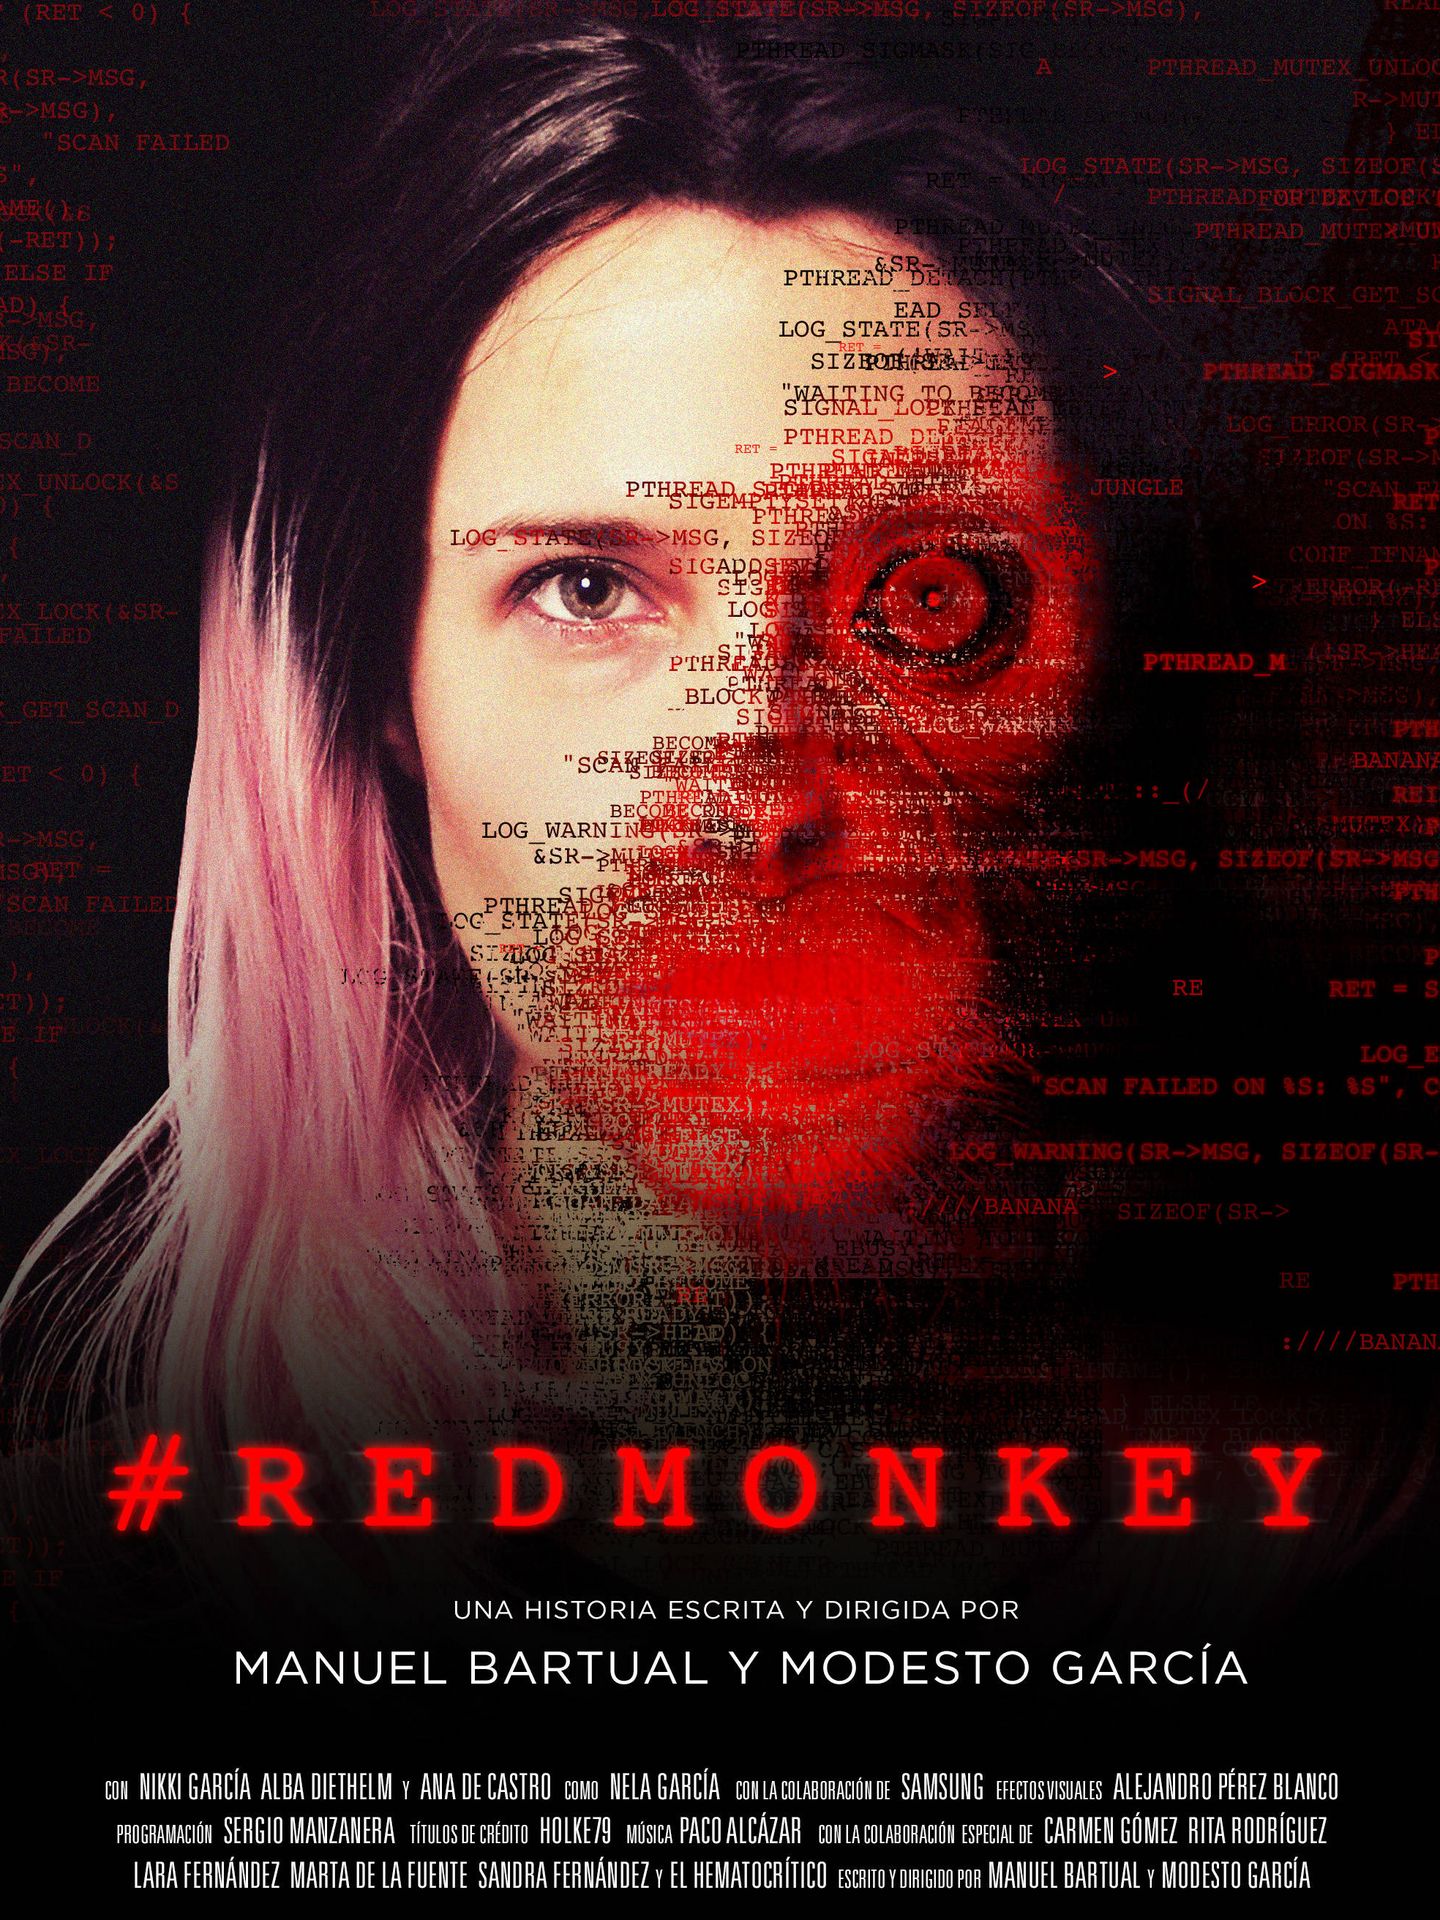 Cartel promocional de 'Red Monkey', el hilo de Bartual y García.